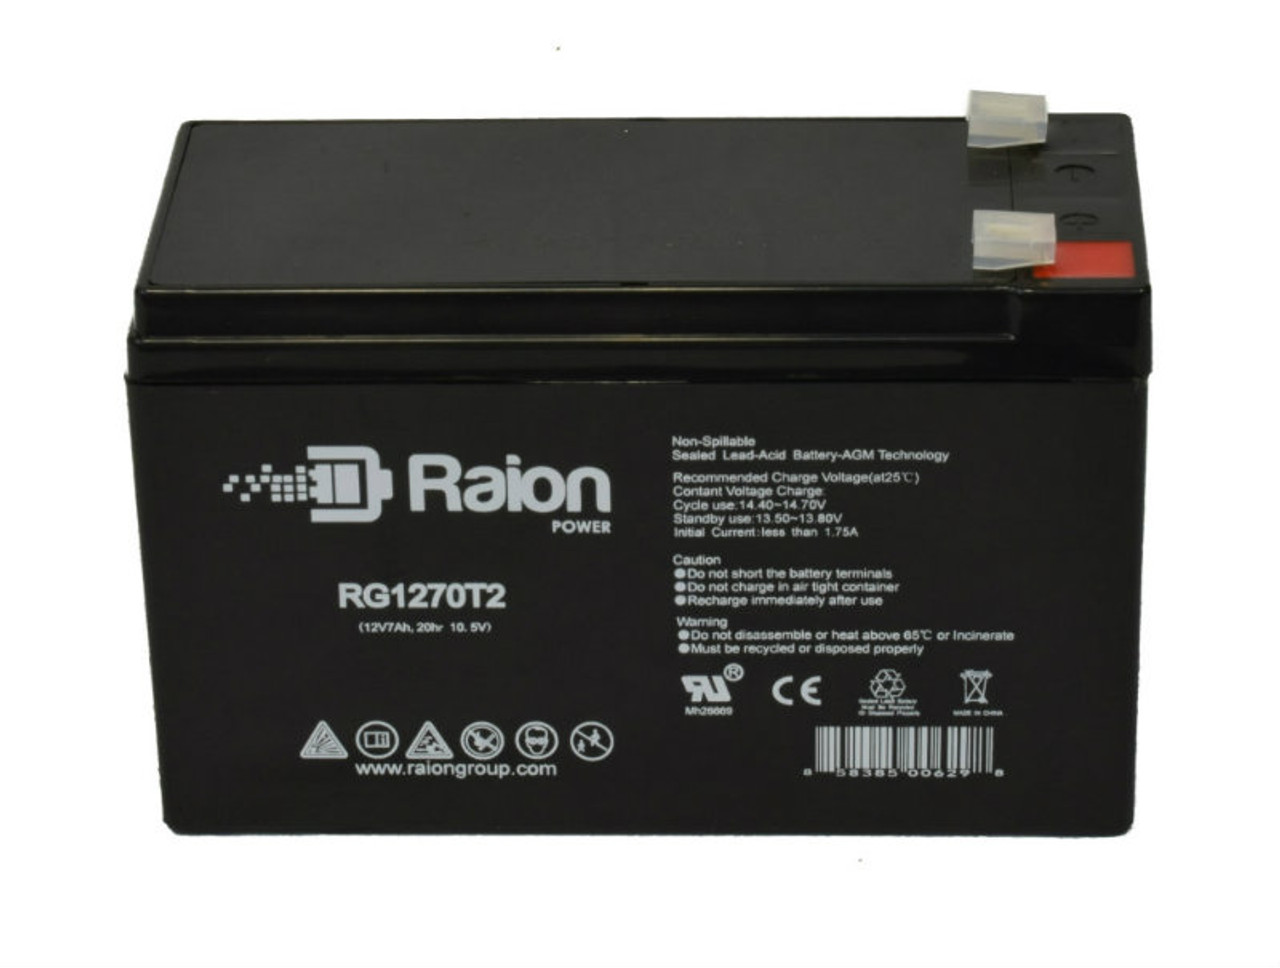 Raion Power RG1270T1 12V 7Ah Lead Acid Battery for Ocean NP6-12